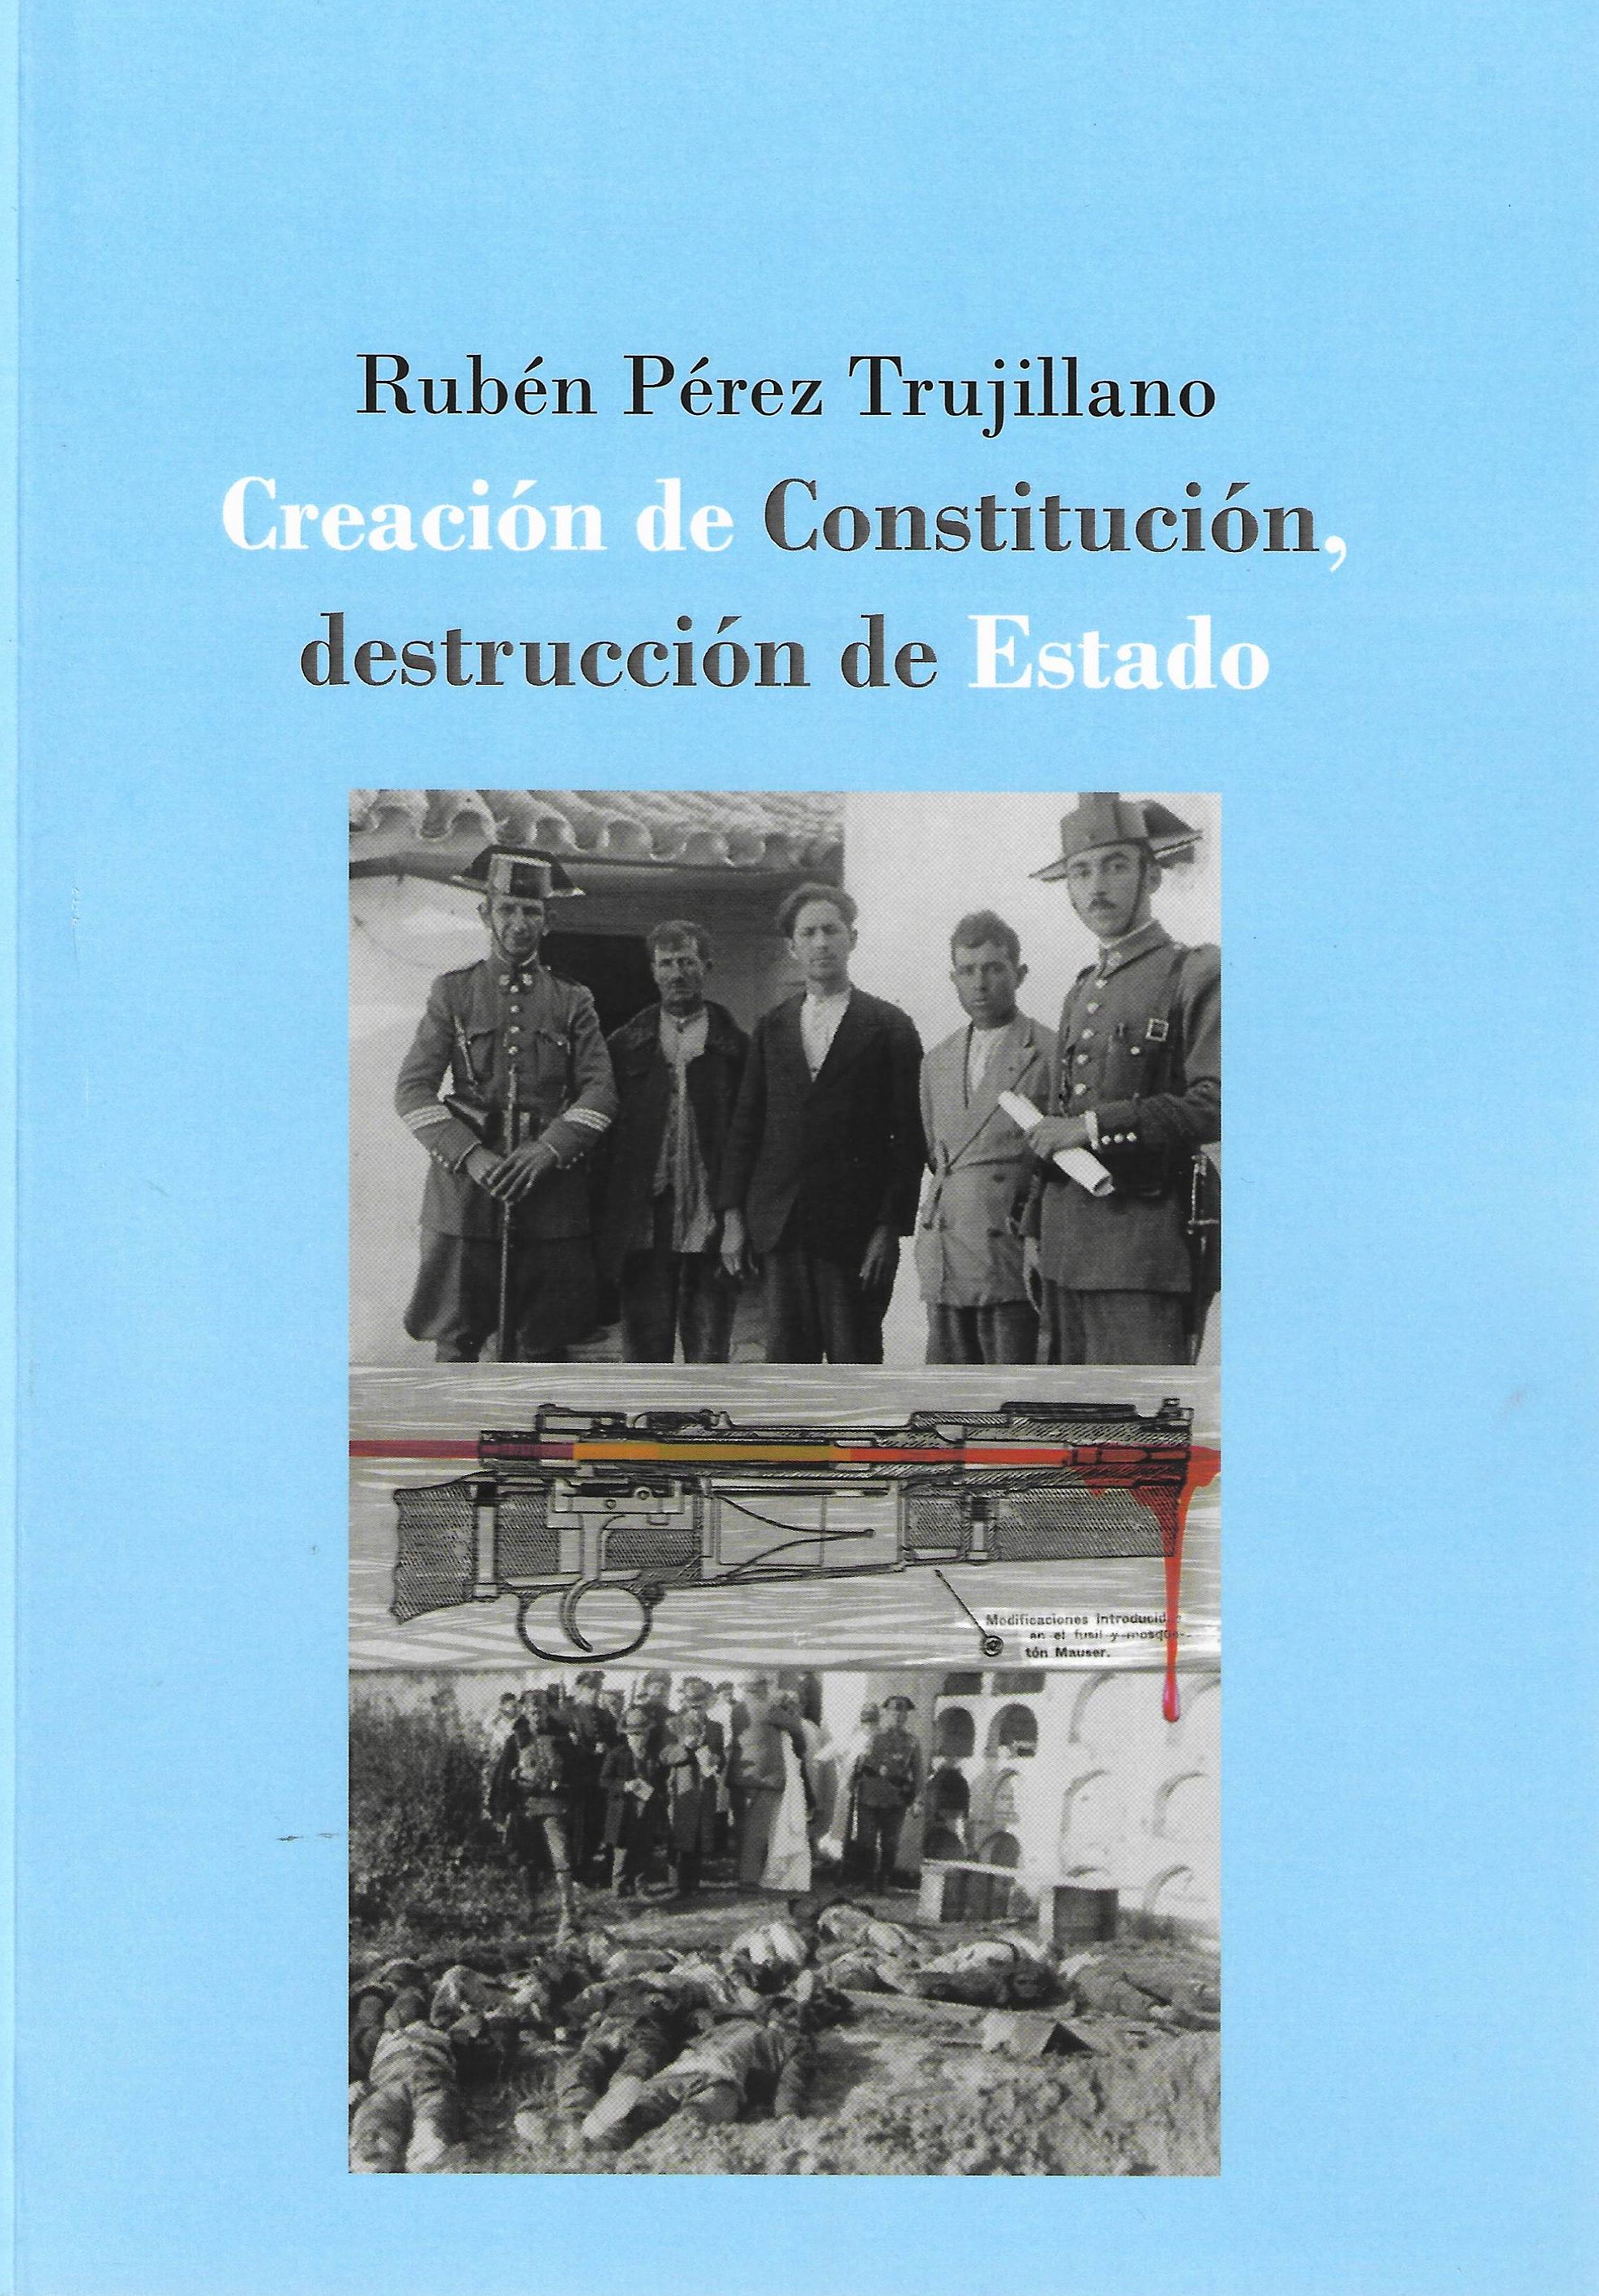 Imagen de portada del libro Creación de Constitución, destrucción de Estado